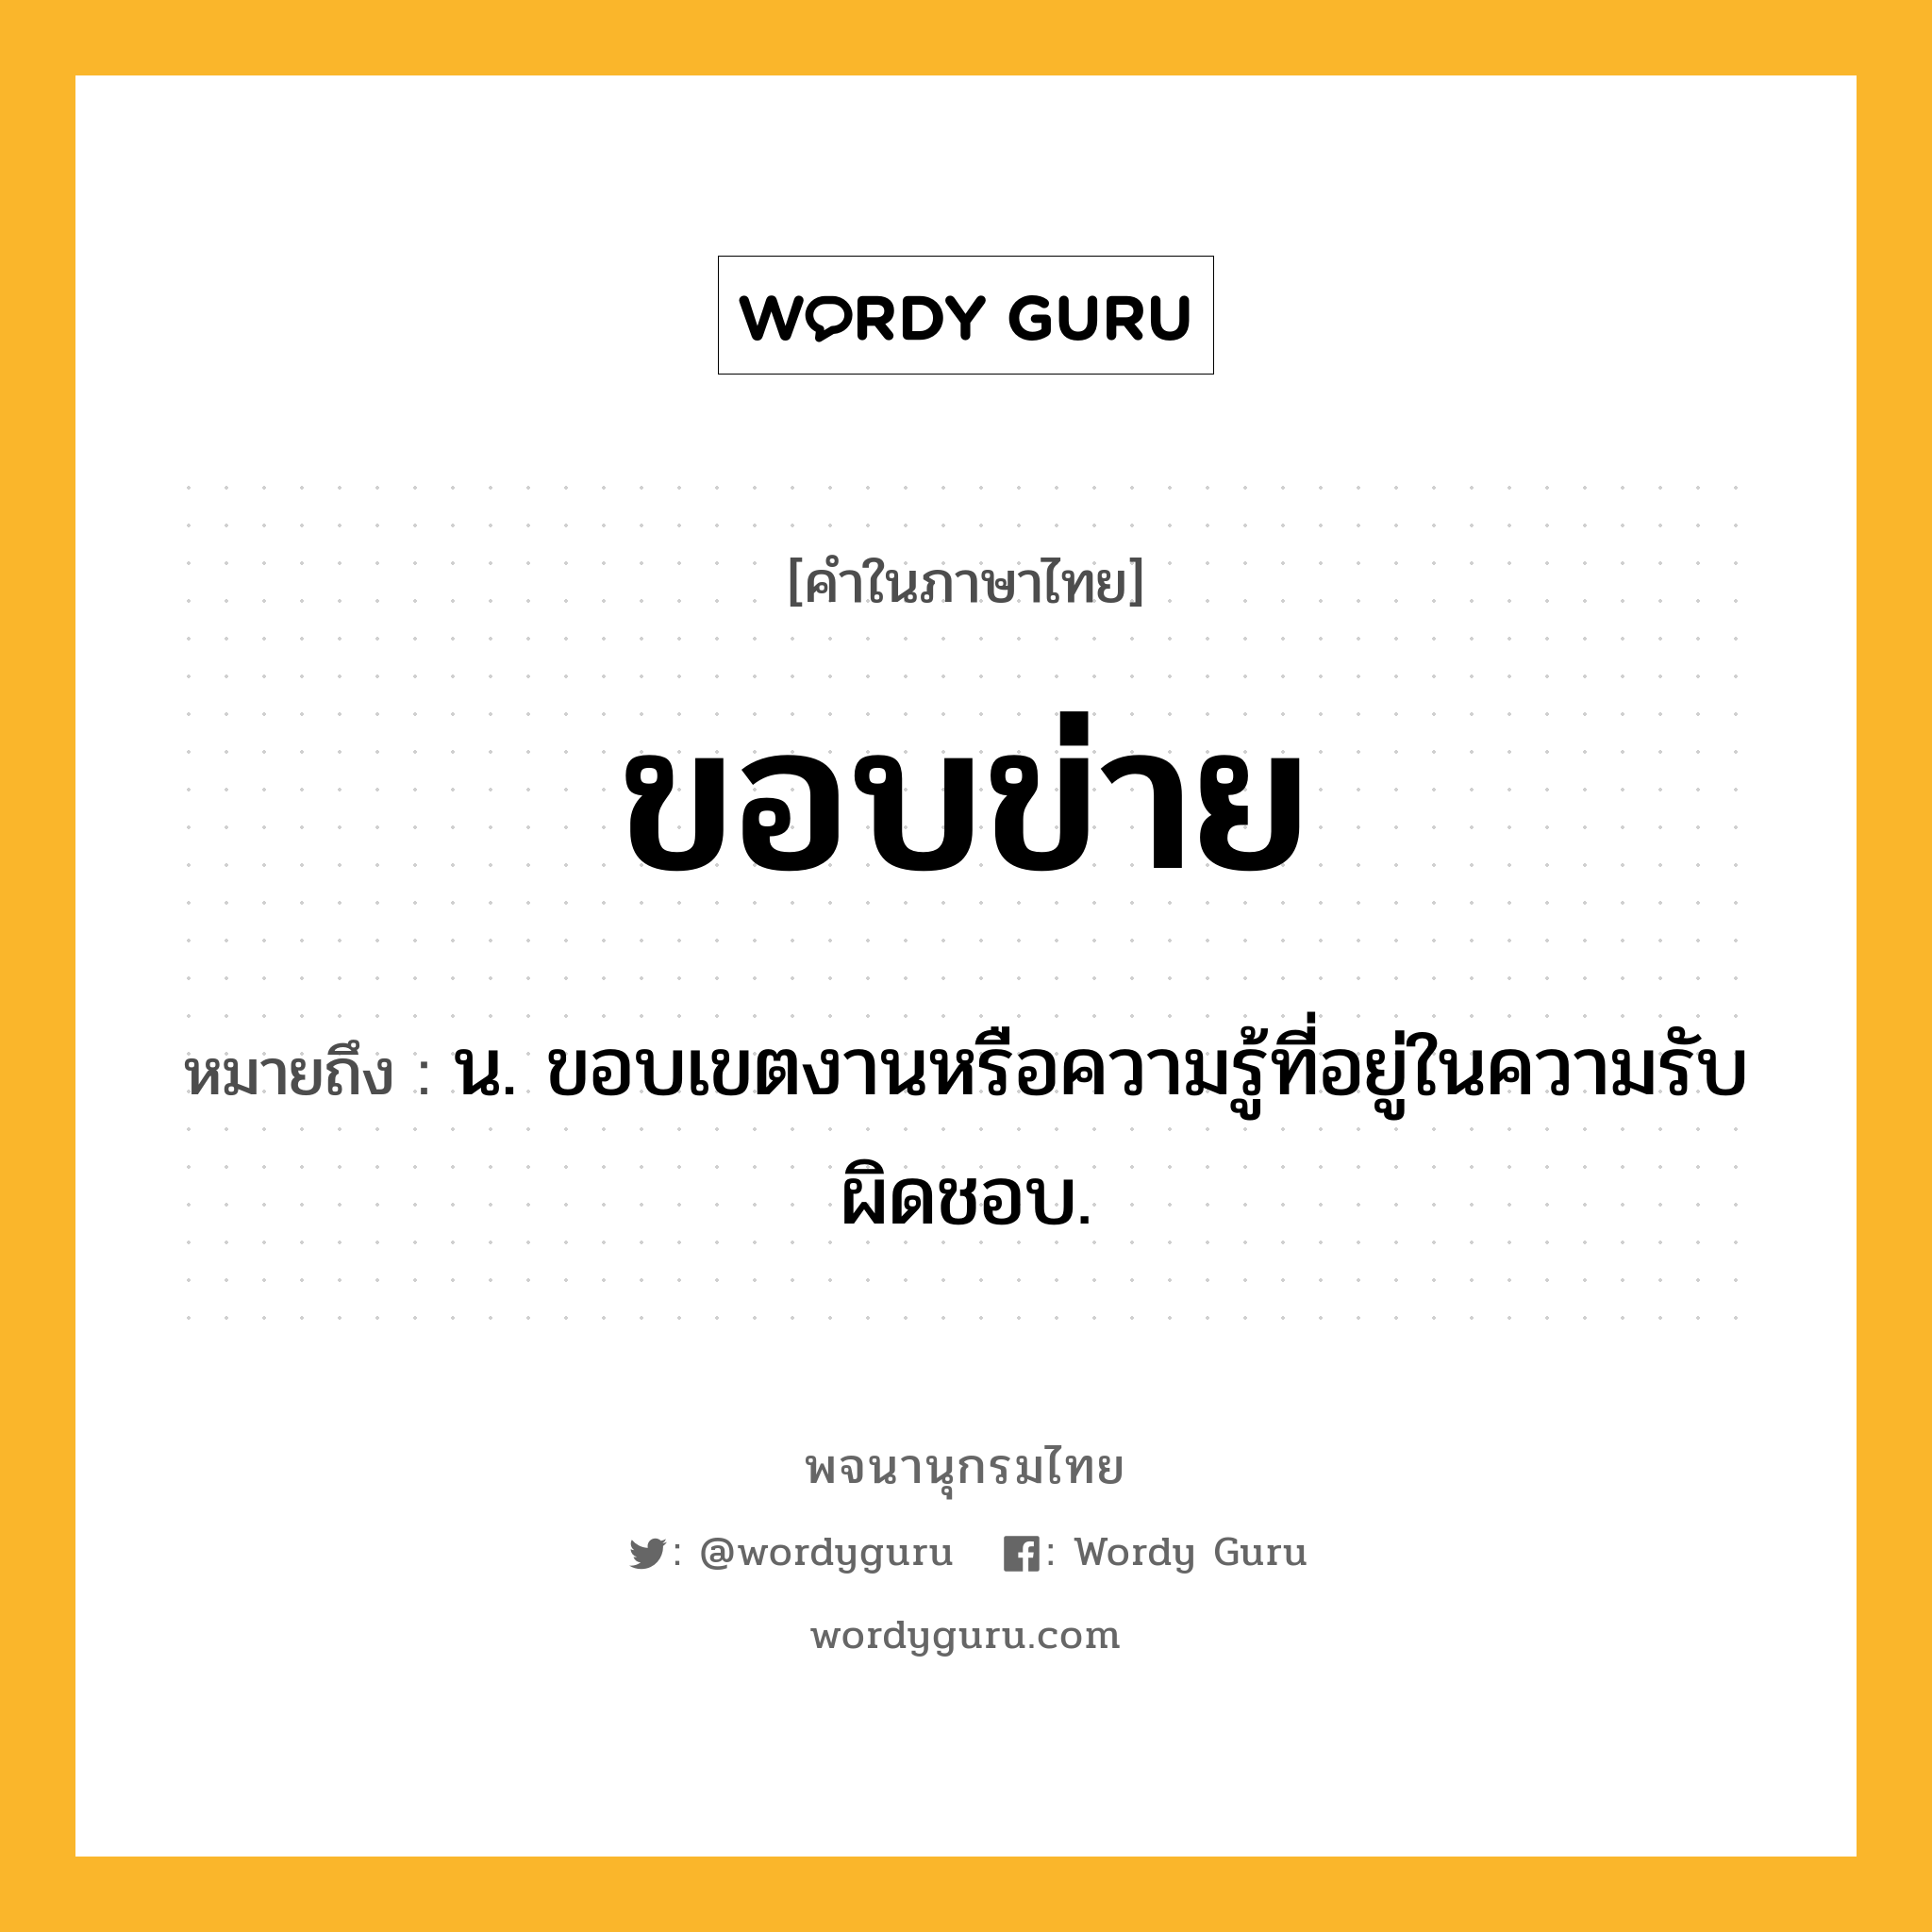 ขอบข่าย หมายถึงอะไร?, คำในภาษาไทย ขอบข่าย หมายถึง น. ขอบเขตงานหรือความรู้ที่อยู่ในความรับผิดชอบ.